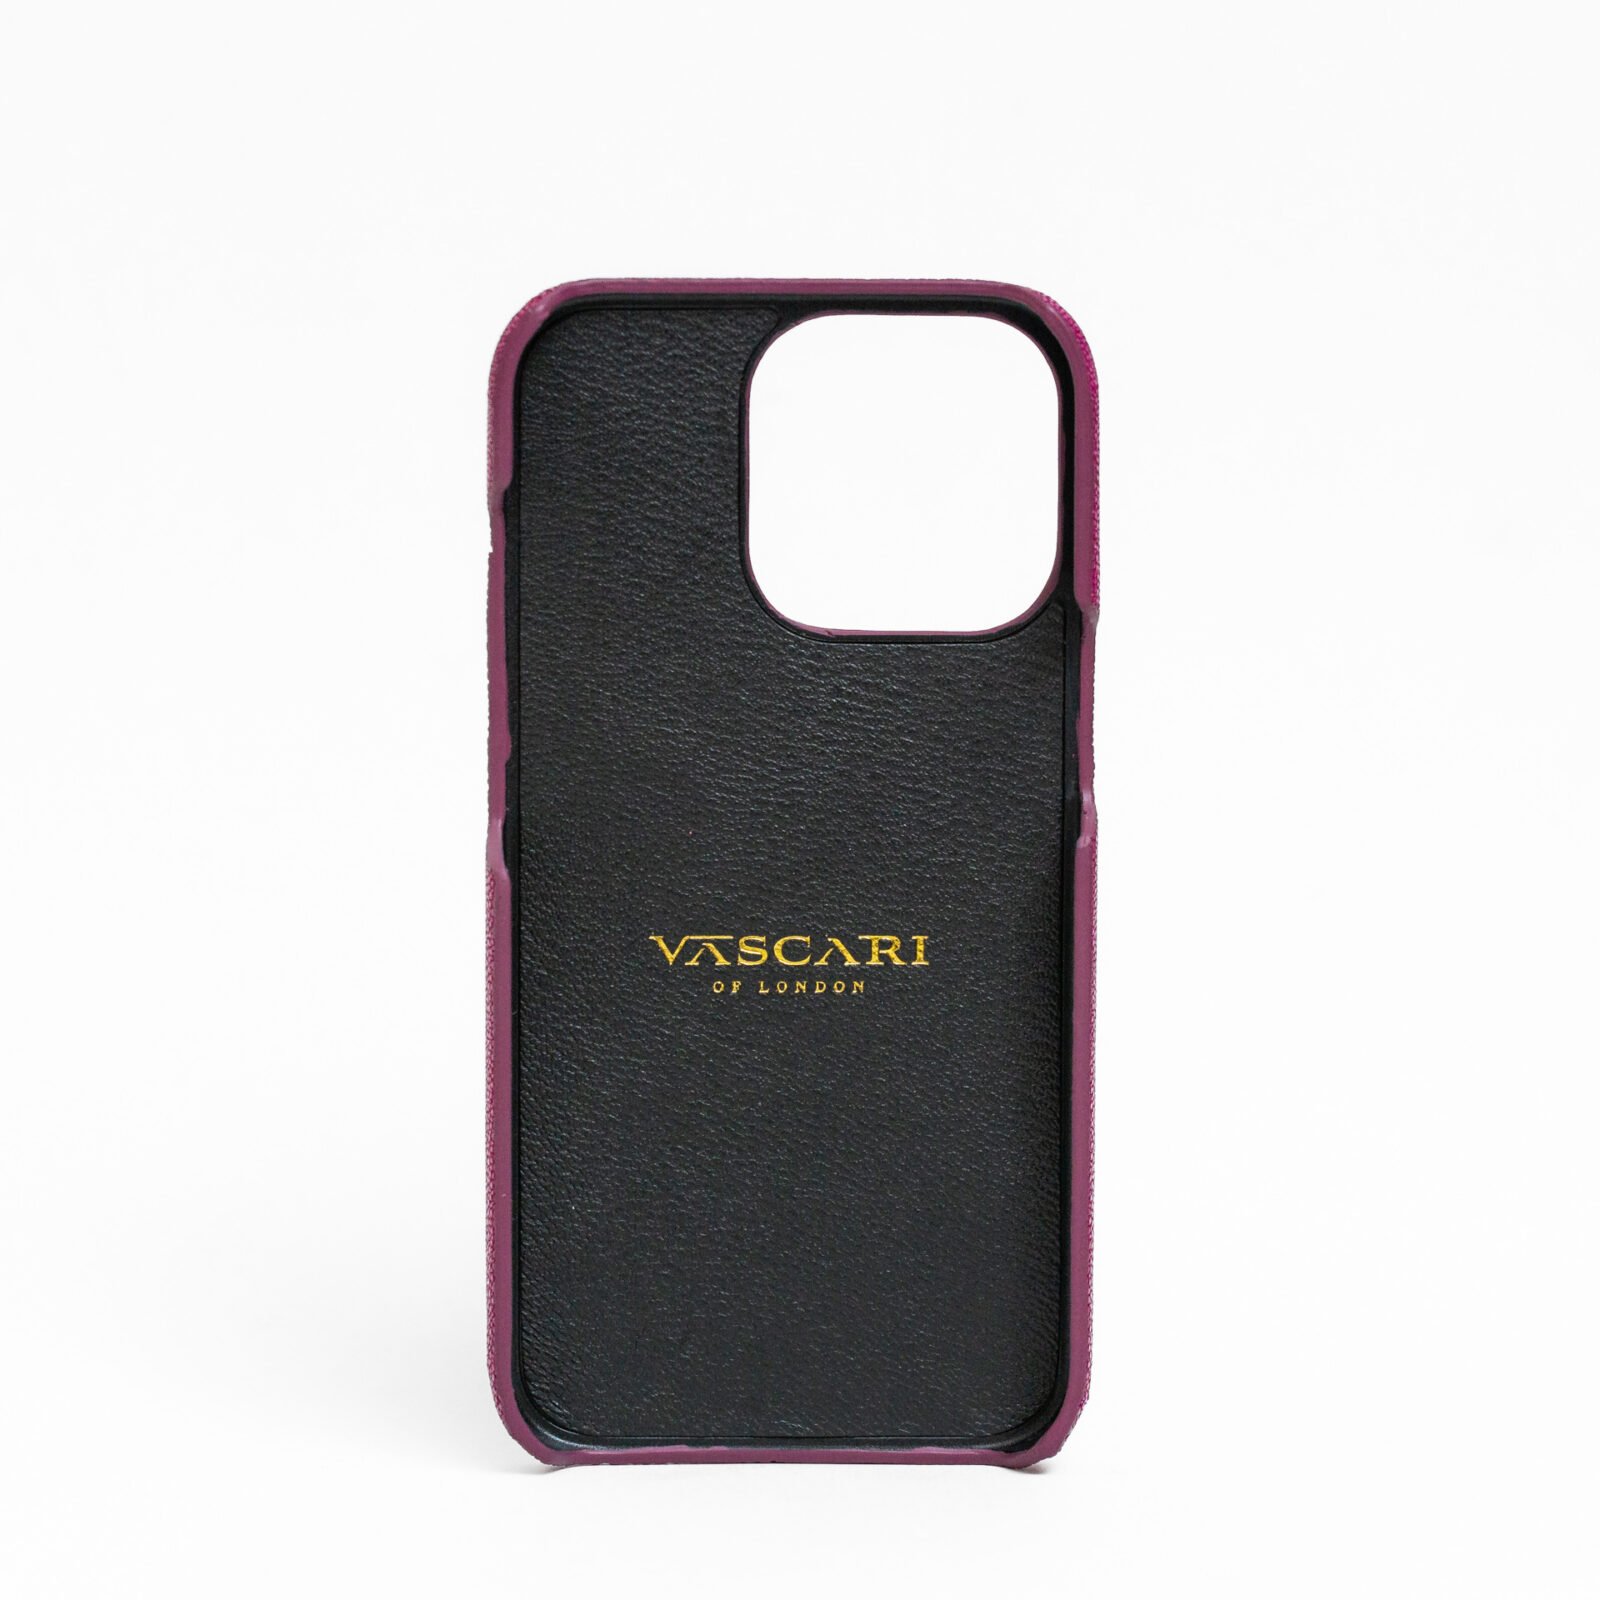 Vascari purple stingray finger holder Leather Case